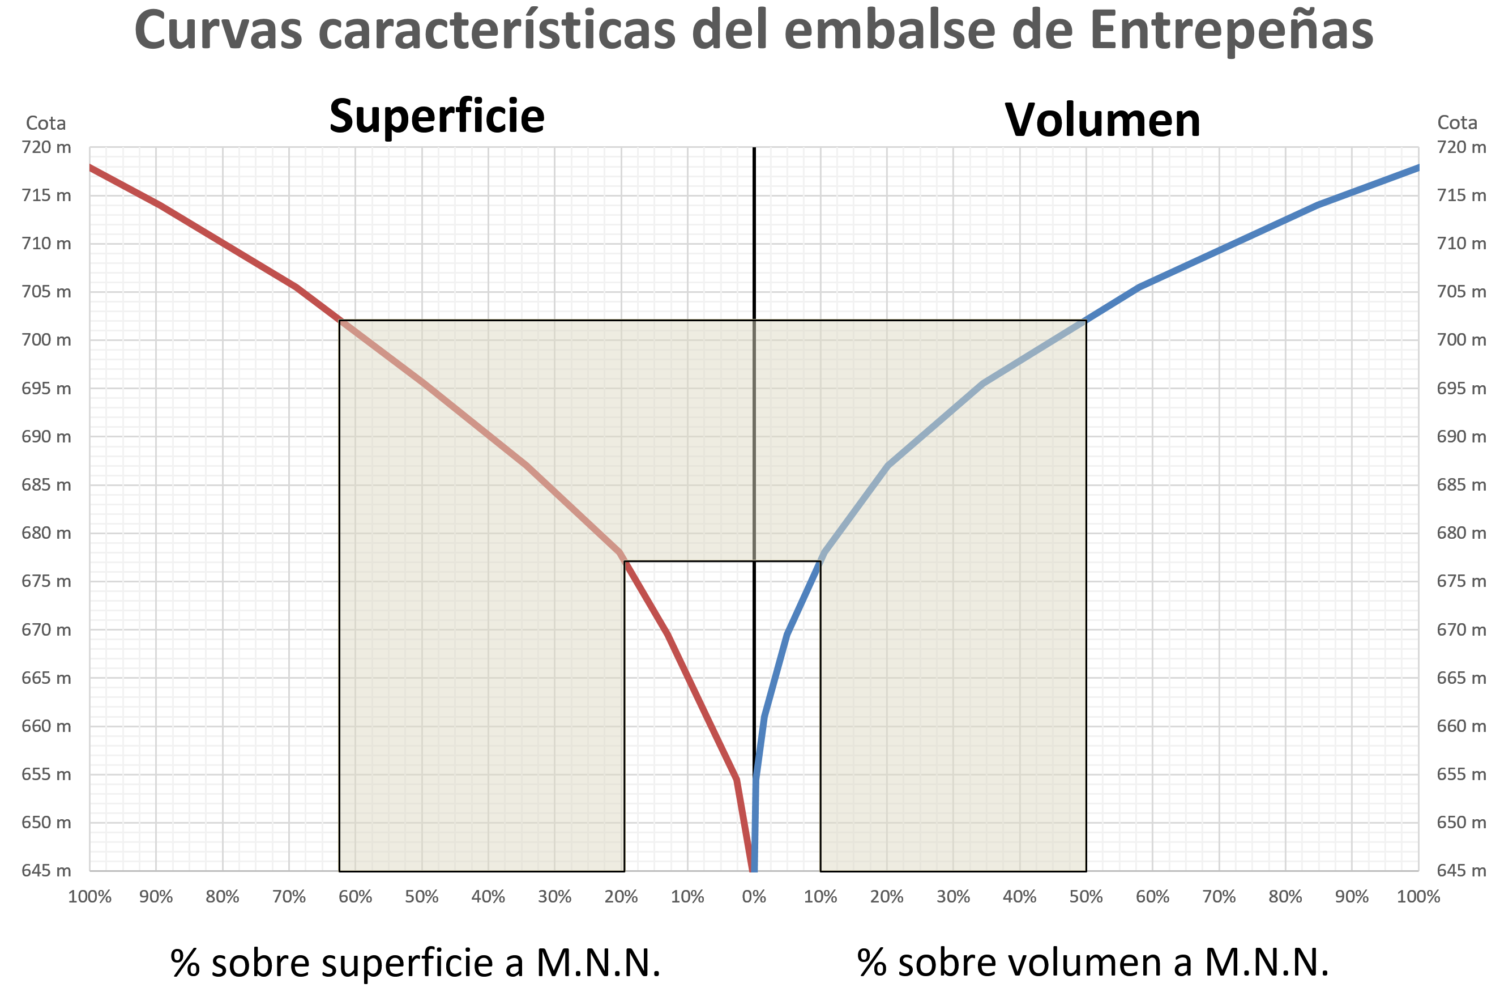 Representación sobre las curvas características del embalse de Entrepeñas del rango principal de funcionamiento del embalse durante la explotación del trasvase Tajo-Segura